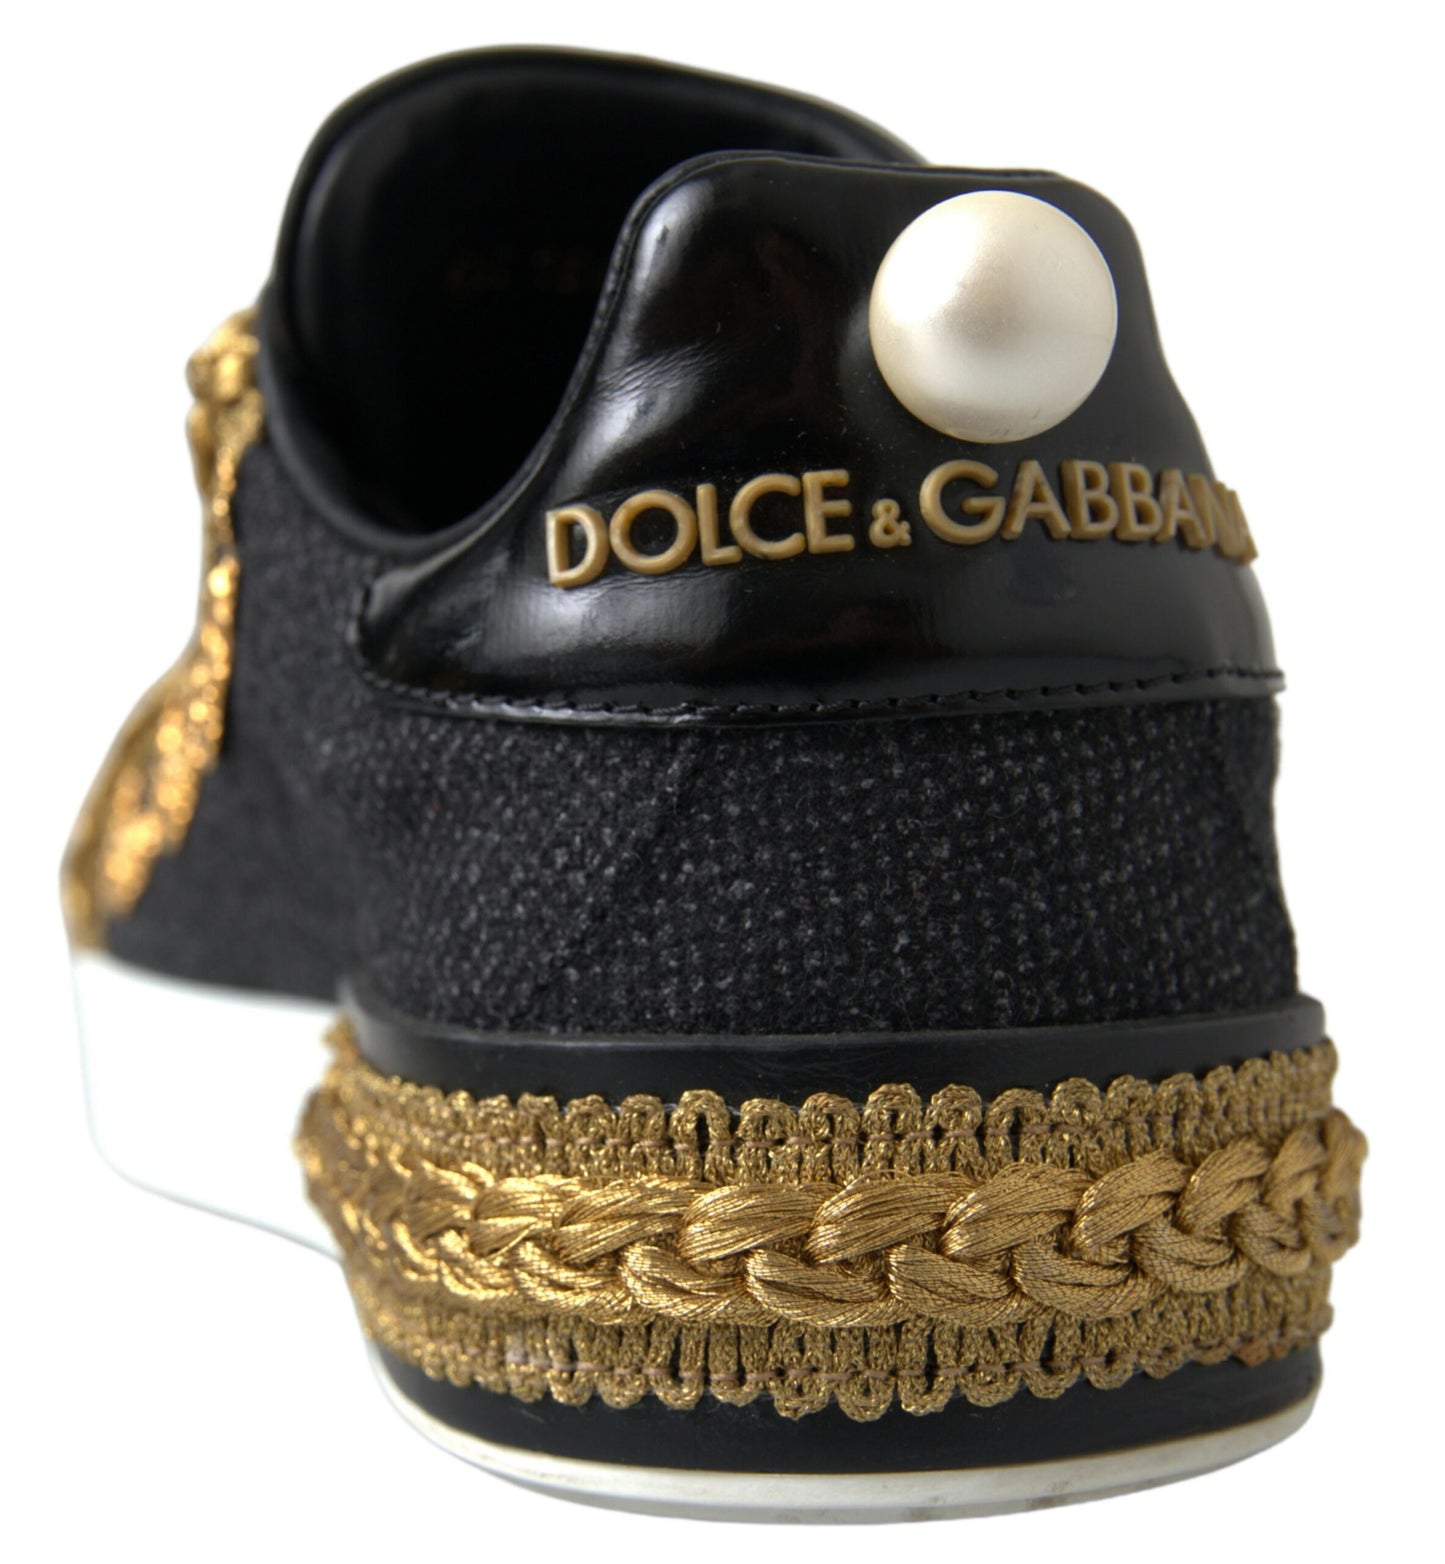 Elegant Portofino Sneakers in Black & Gold